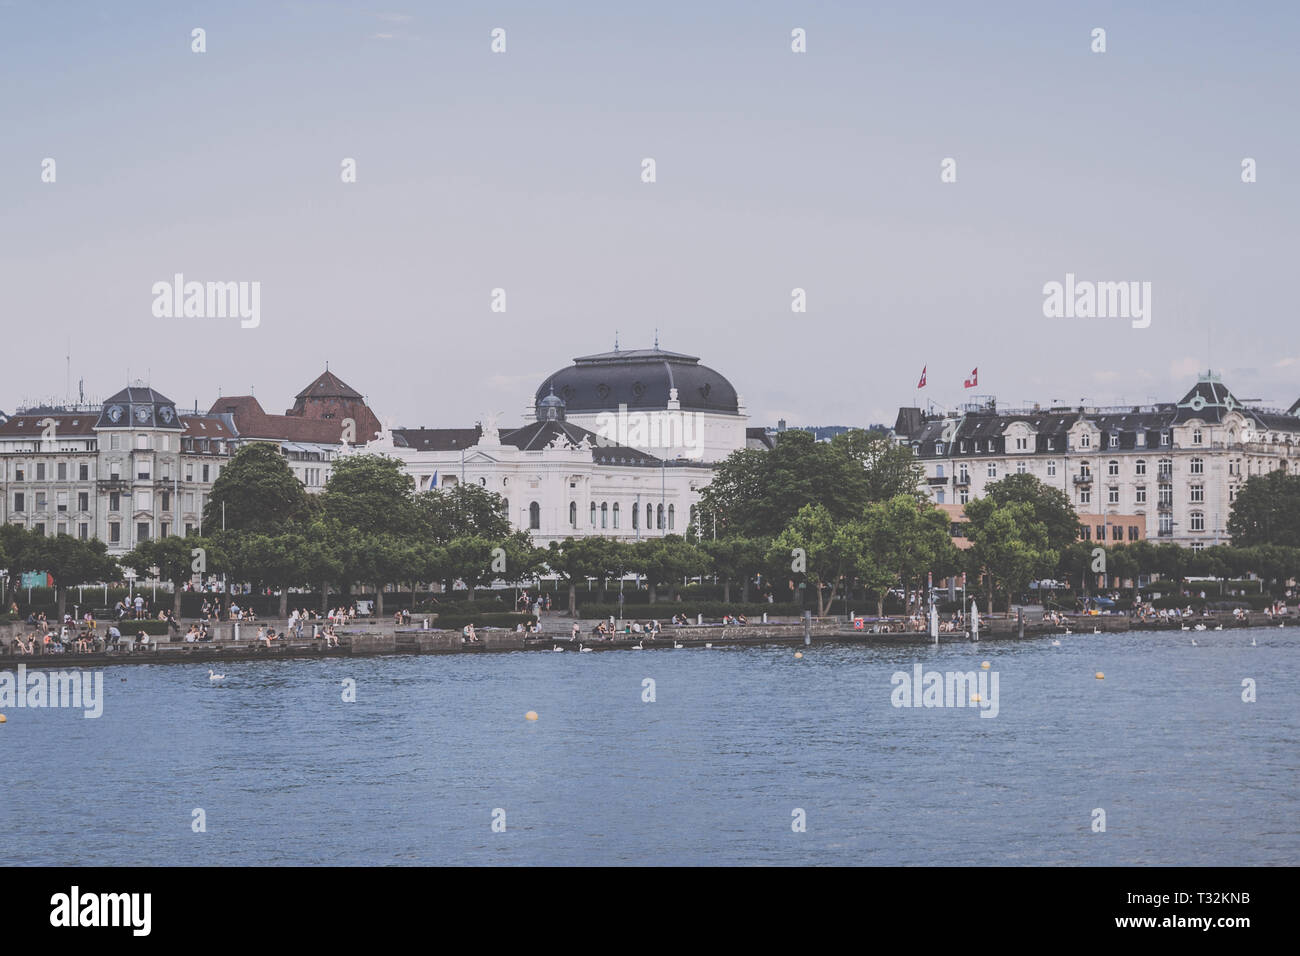 Zürich, Schweiz - 21. Juni 2017: Blick auf den Züricher See und der Oper in der historischen Zentrum der Stadt Zürich. Landschaft Sommer, Sonne Wetter, blau s Stockfoto